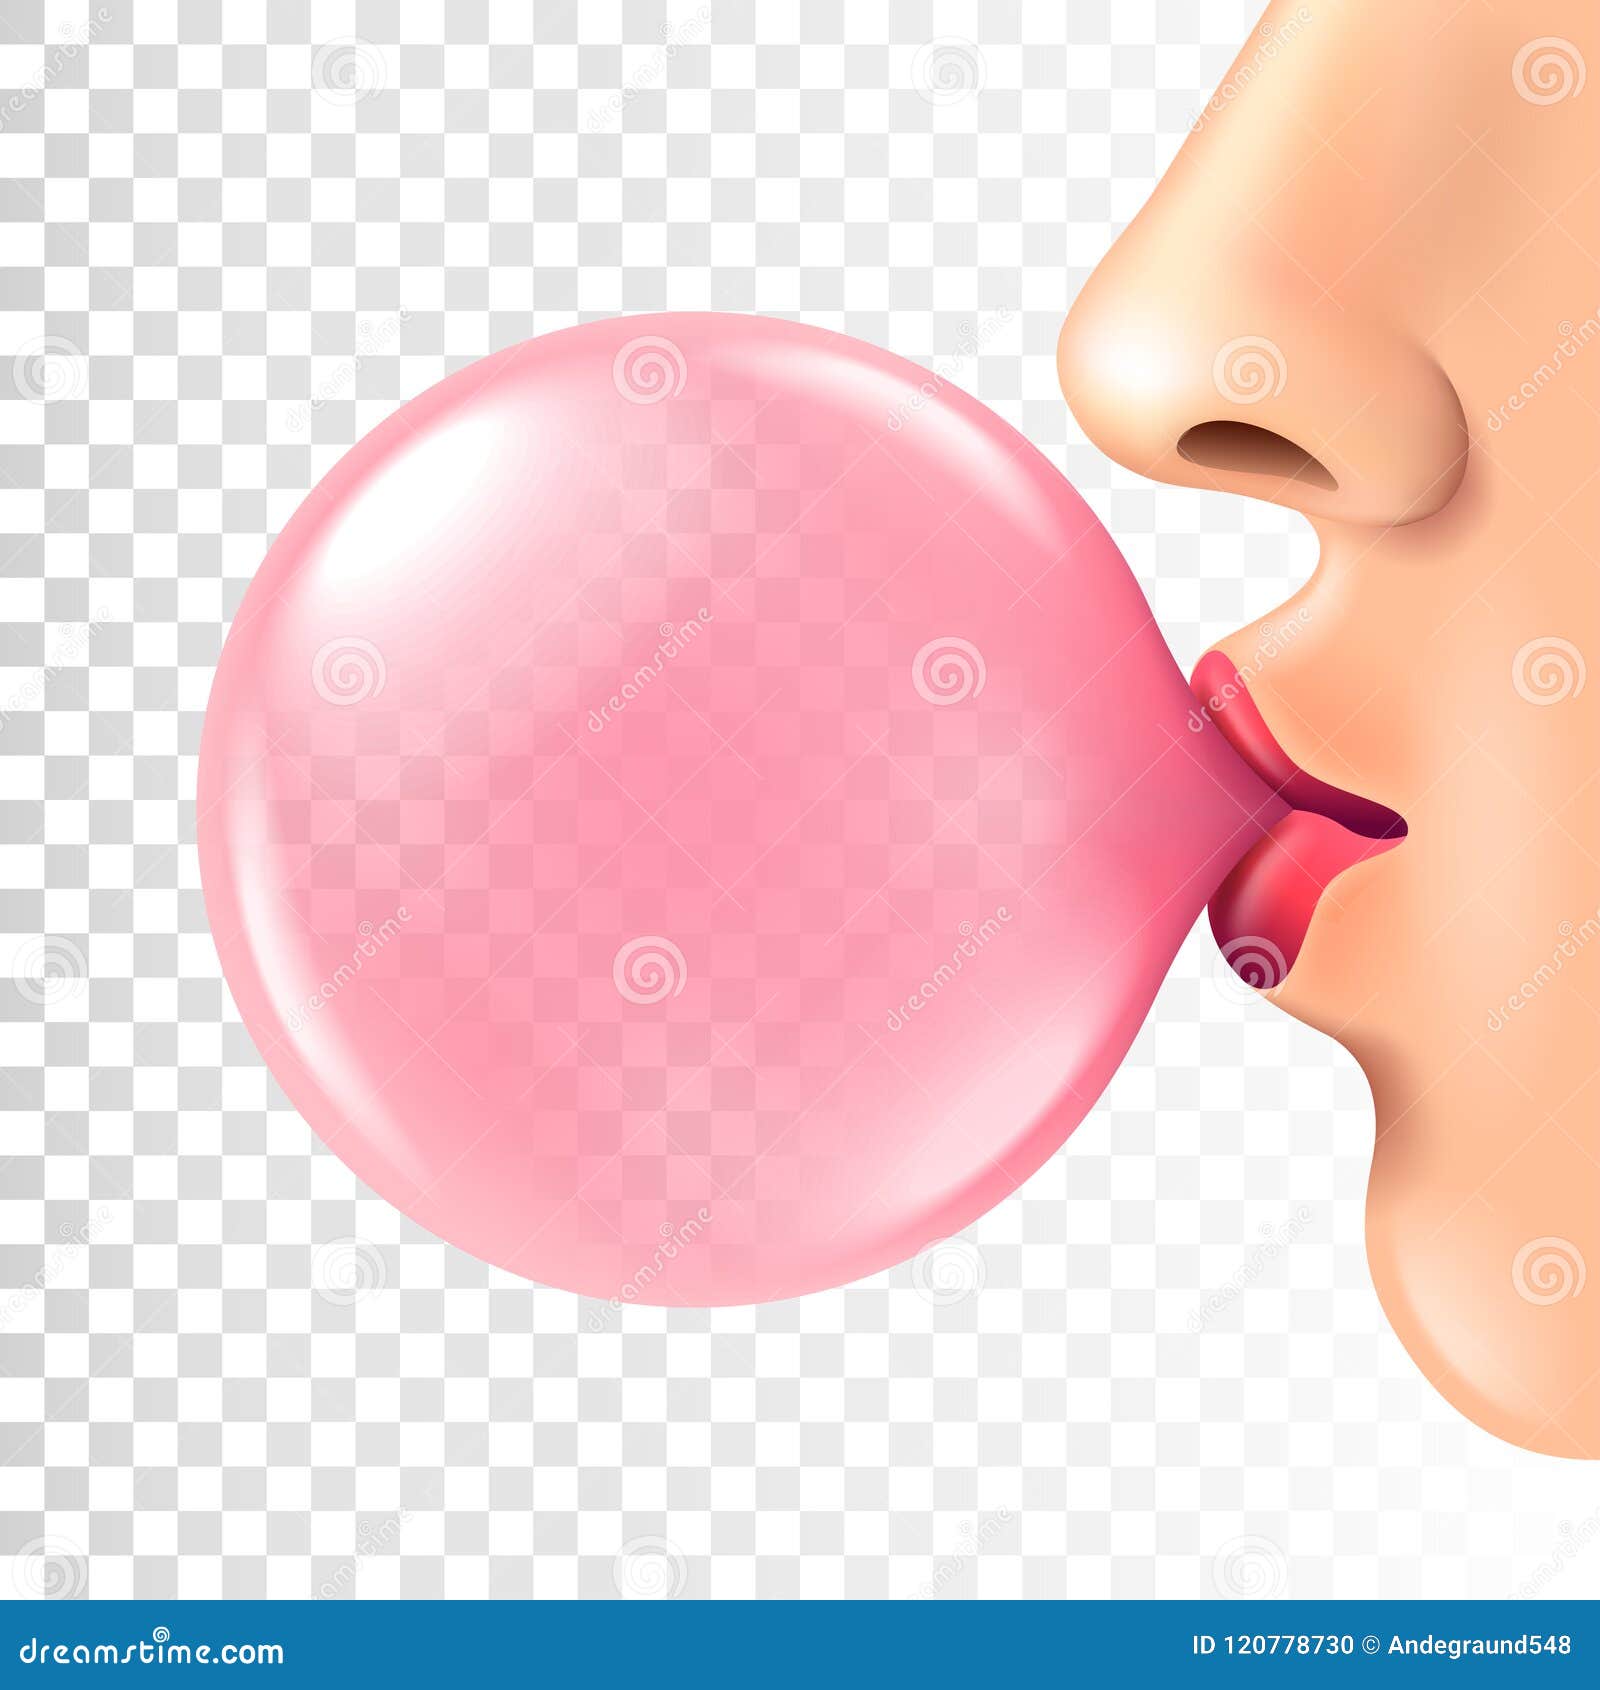 bubblegum illustration  Clip Art Library